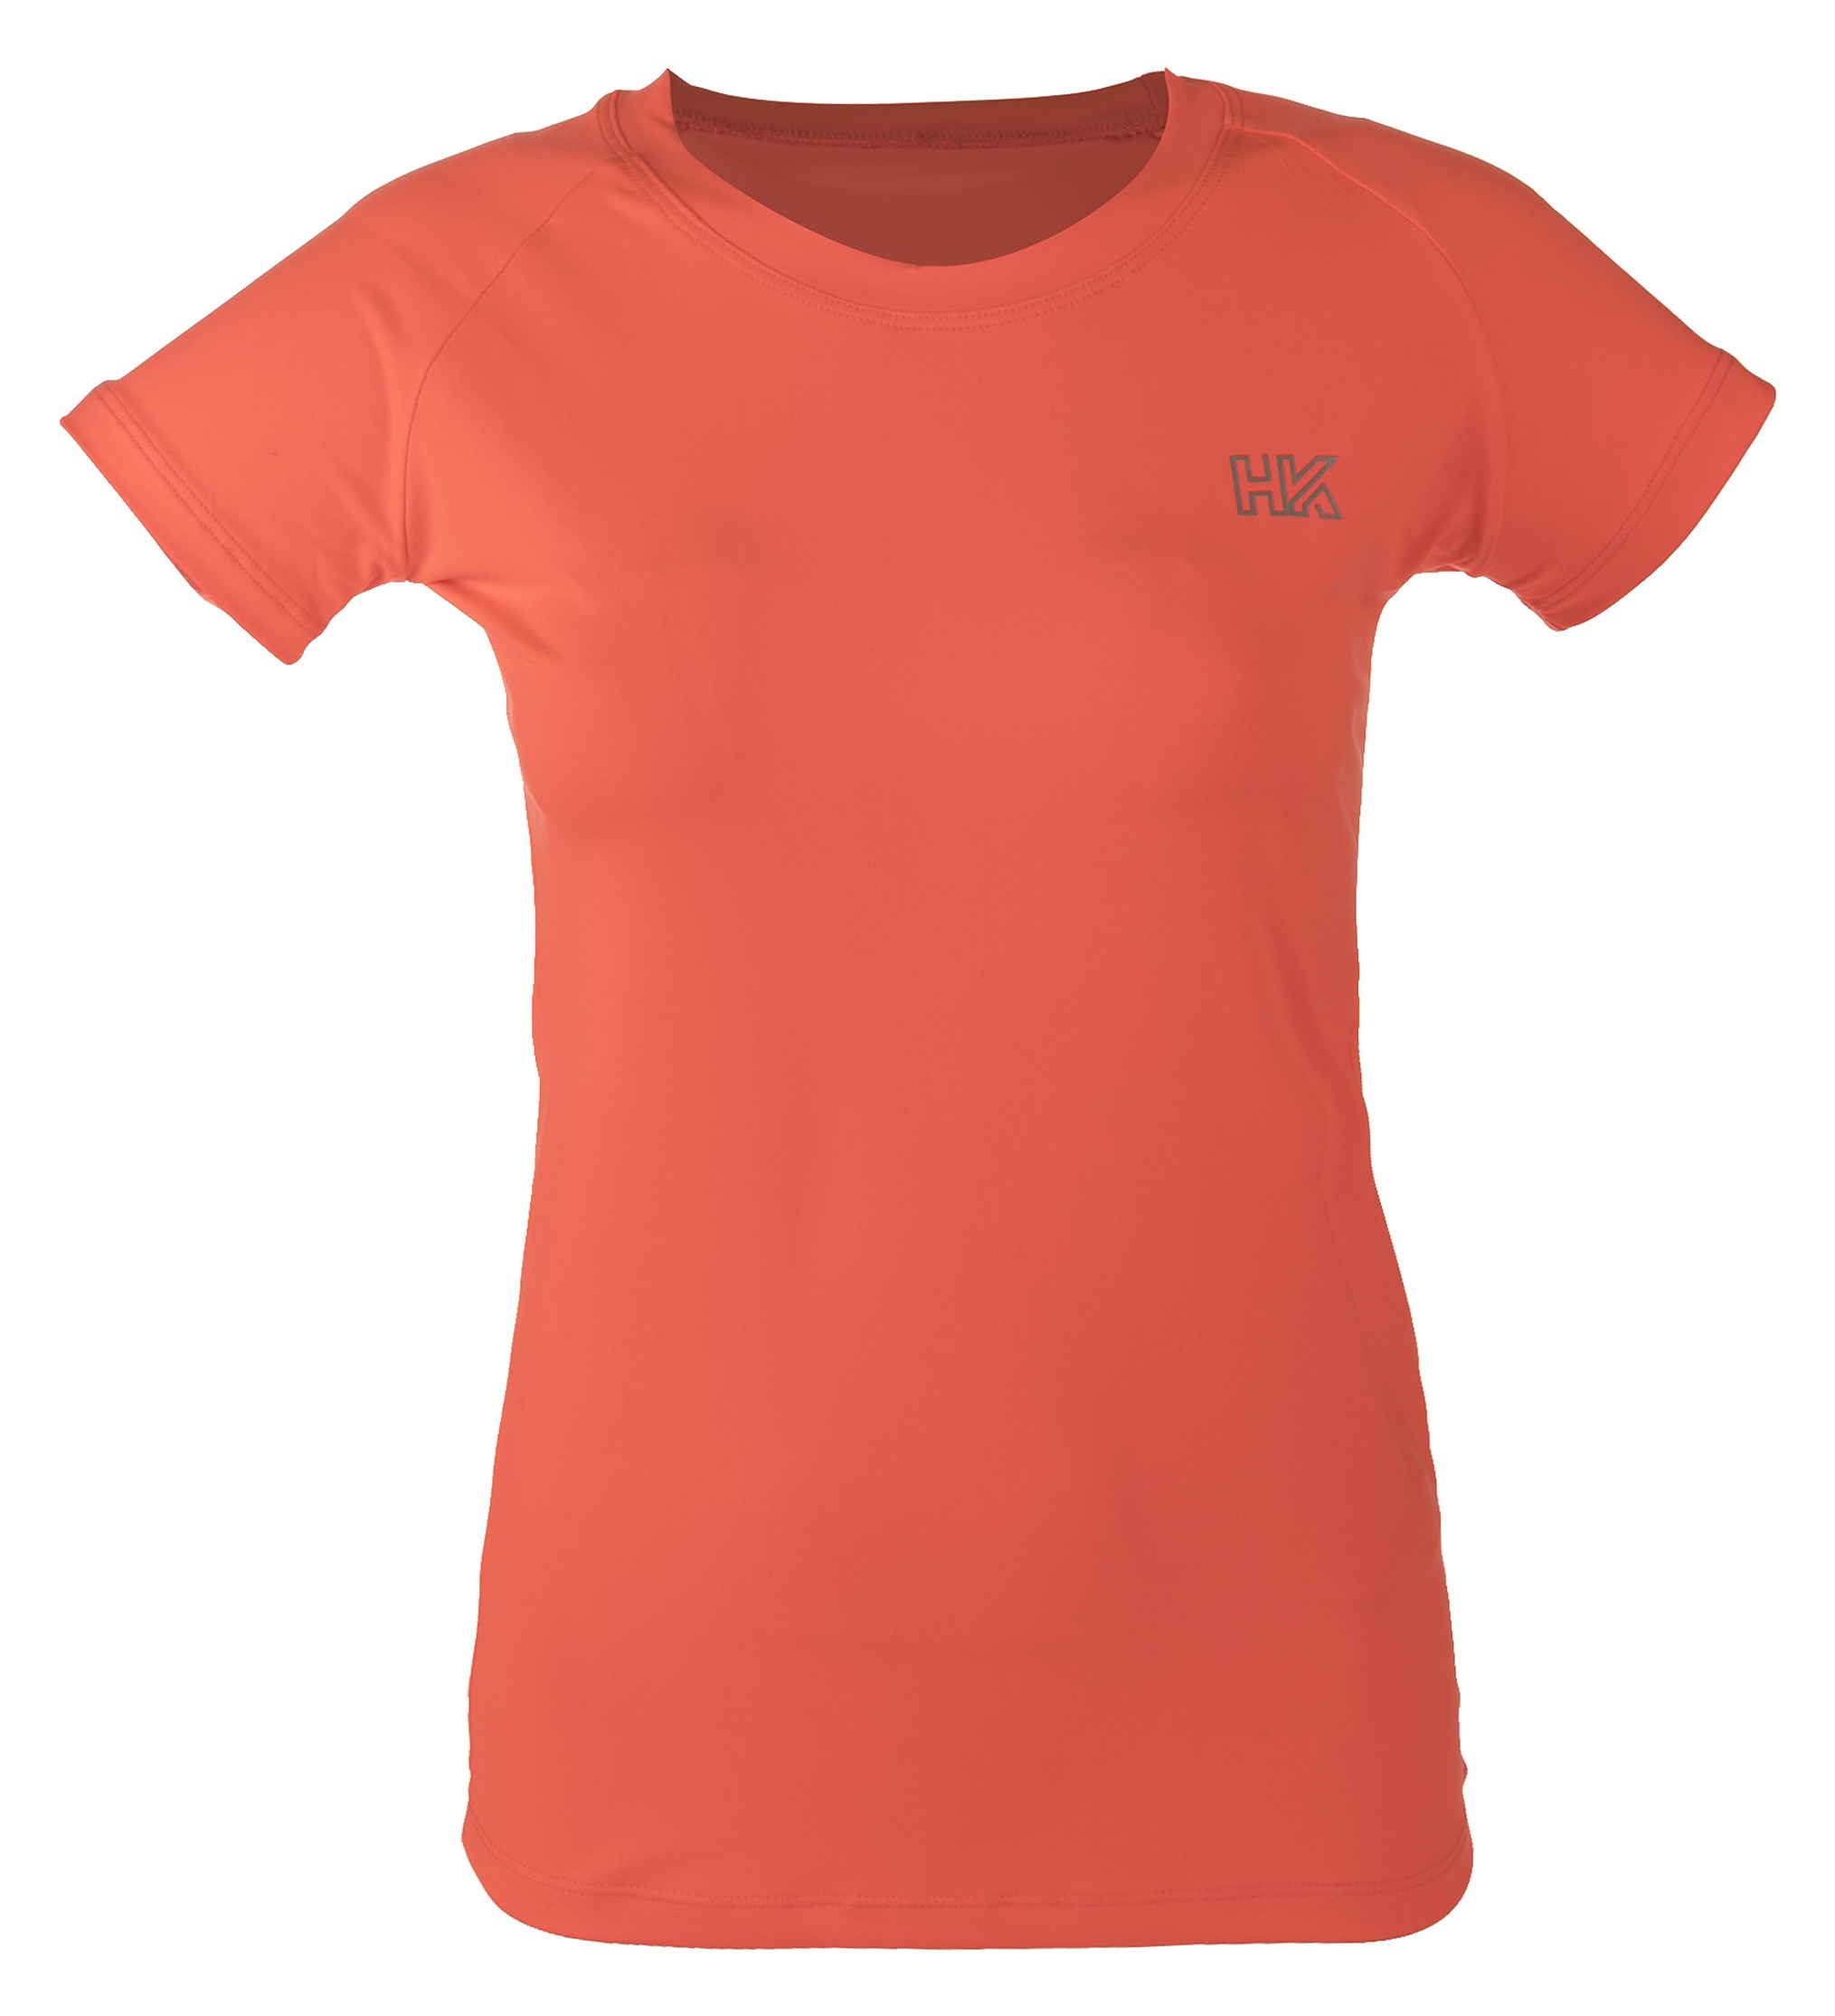 تی شرت ورزشی زنانه اچ کی مدل 2473-Orange